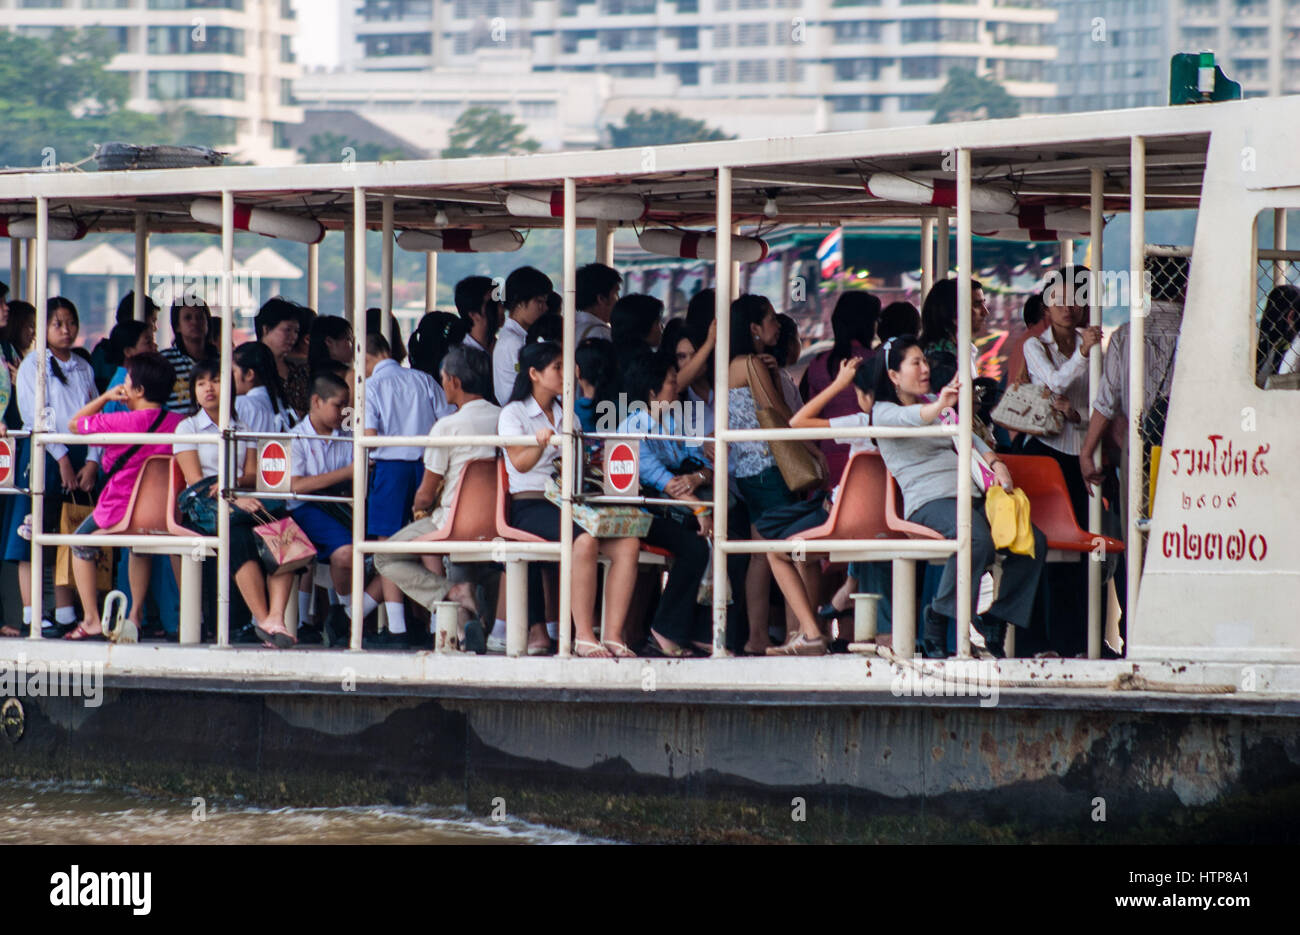 Bangkok, Thailand. 15. November 2006. Eine überfüllte Passagierfähre auf dem Chao Phraya River, dem legendären Fluss der Könige, das durch Bangkok fließt. Thailand ist ein beliebtes Touristenziel geworden. Bildnachweis: Arnold Drapkin/ZUMA Draht/Alamy Live-Nachrichten Stockfoto